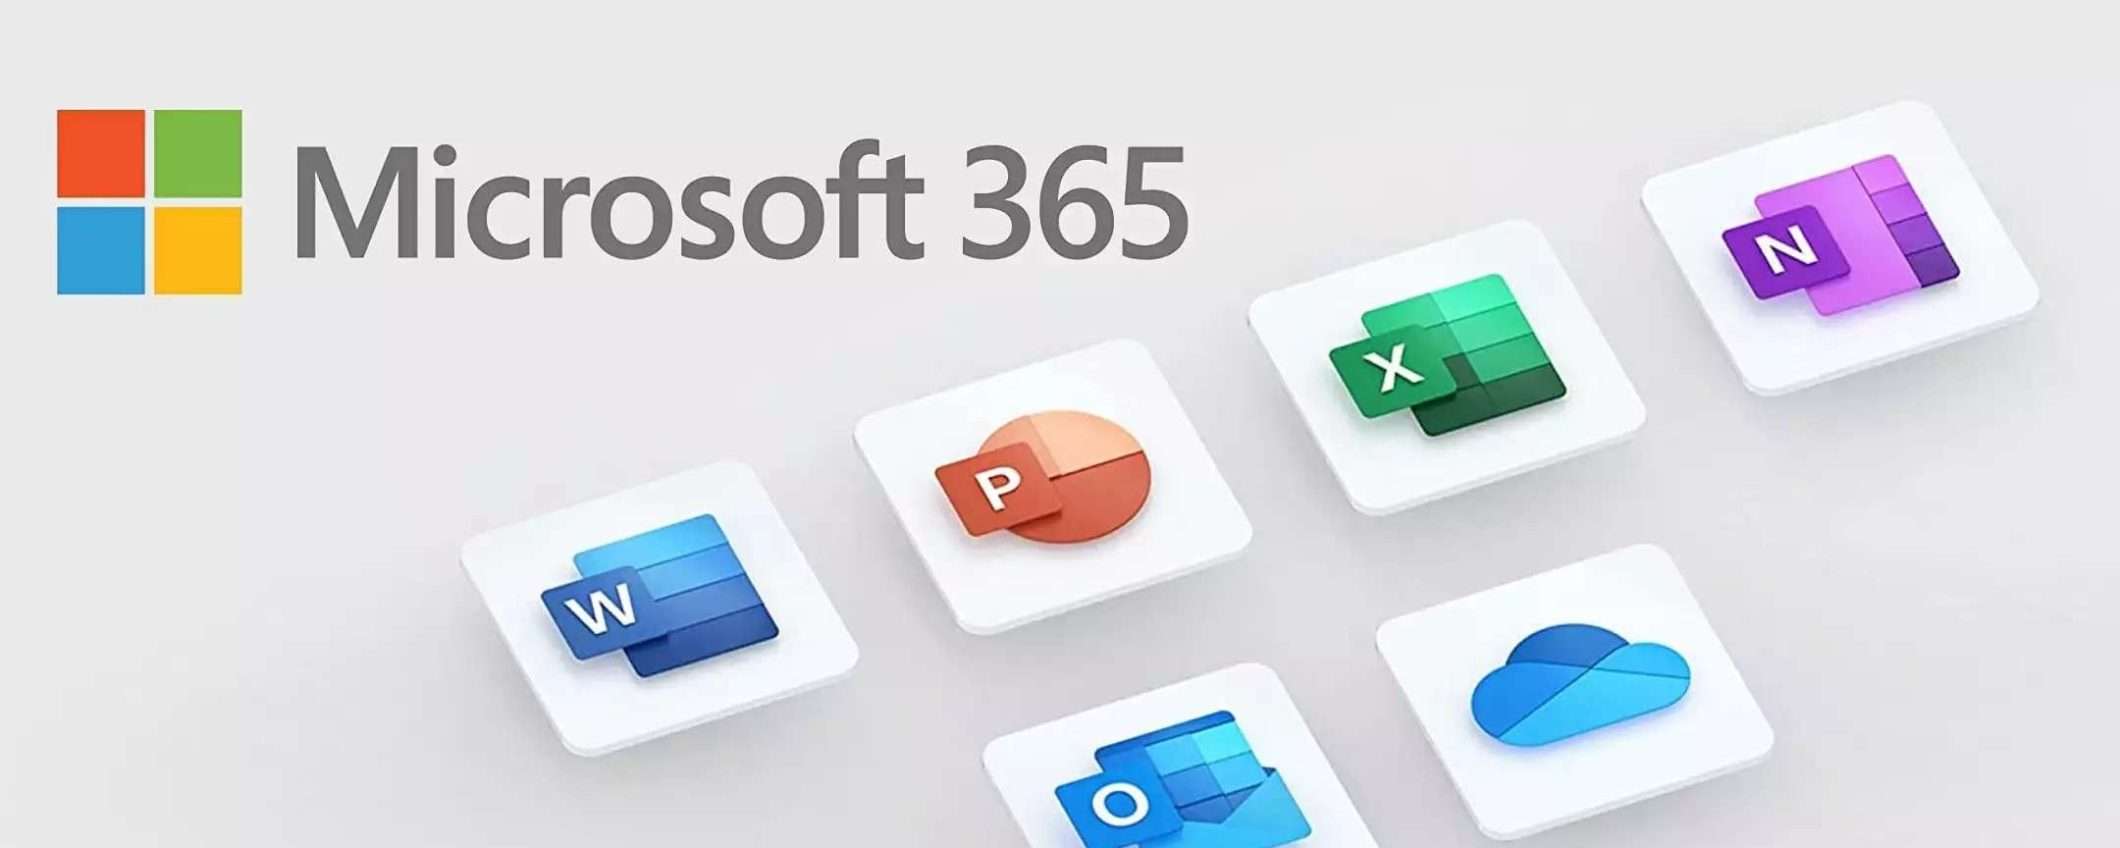 Microsoft 365 Family: un anno di abbonamento a meno di 50€ con QUEST'OFFERTA di Amazon